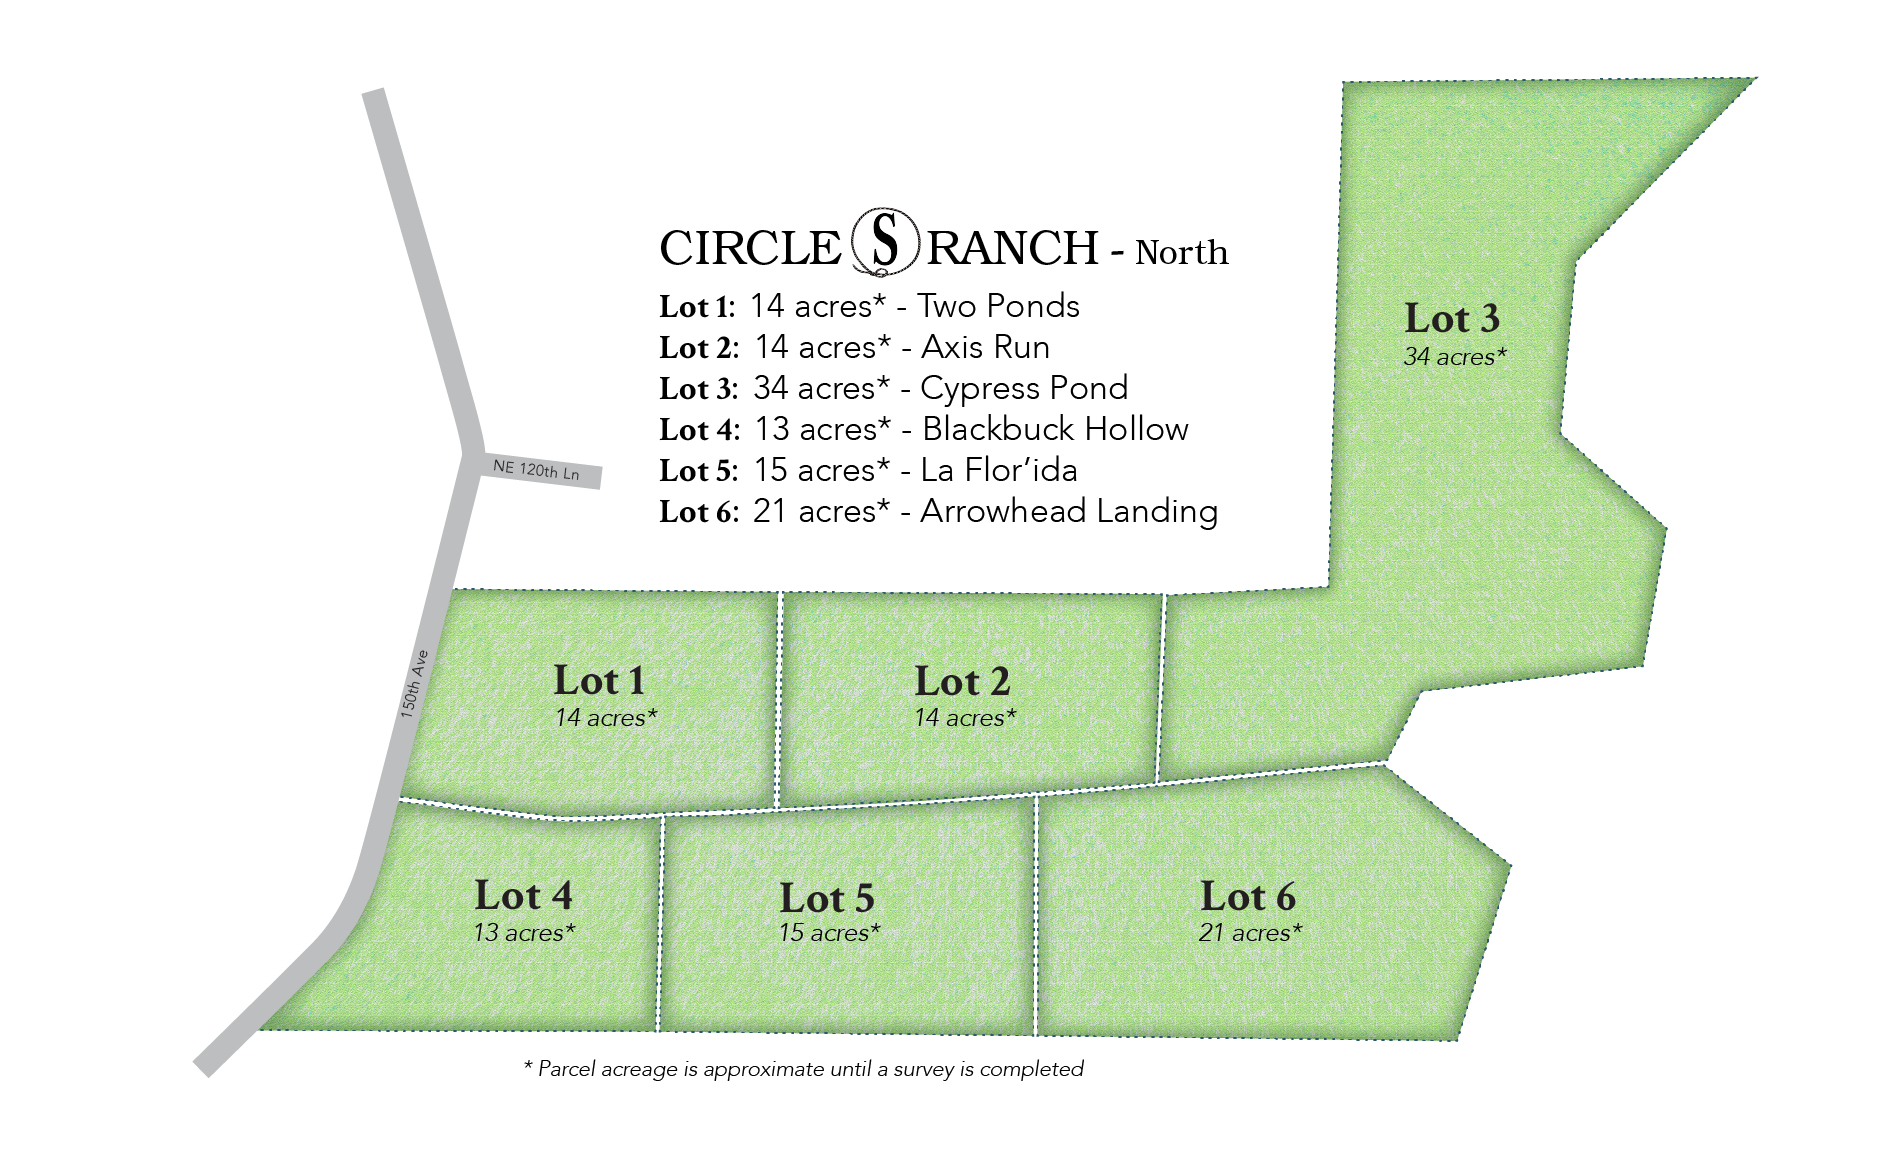 A map of Circle S Ranch North lots